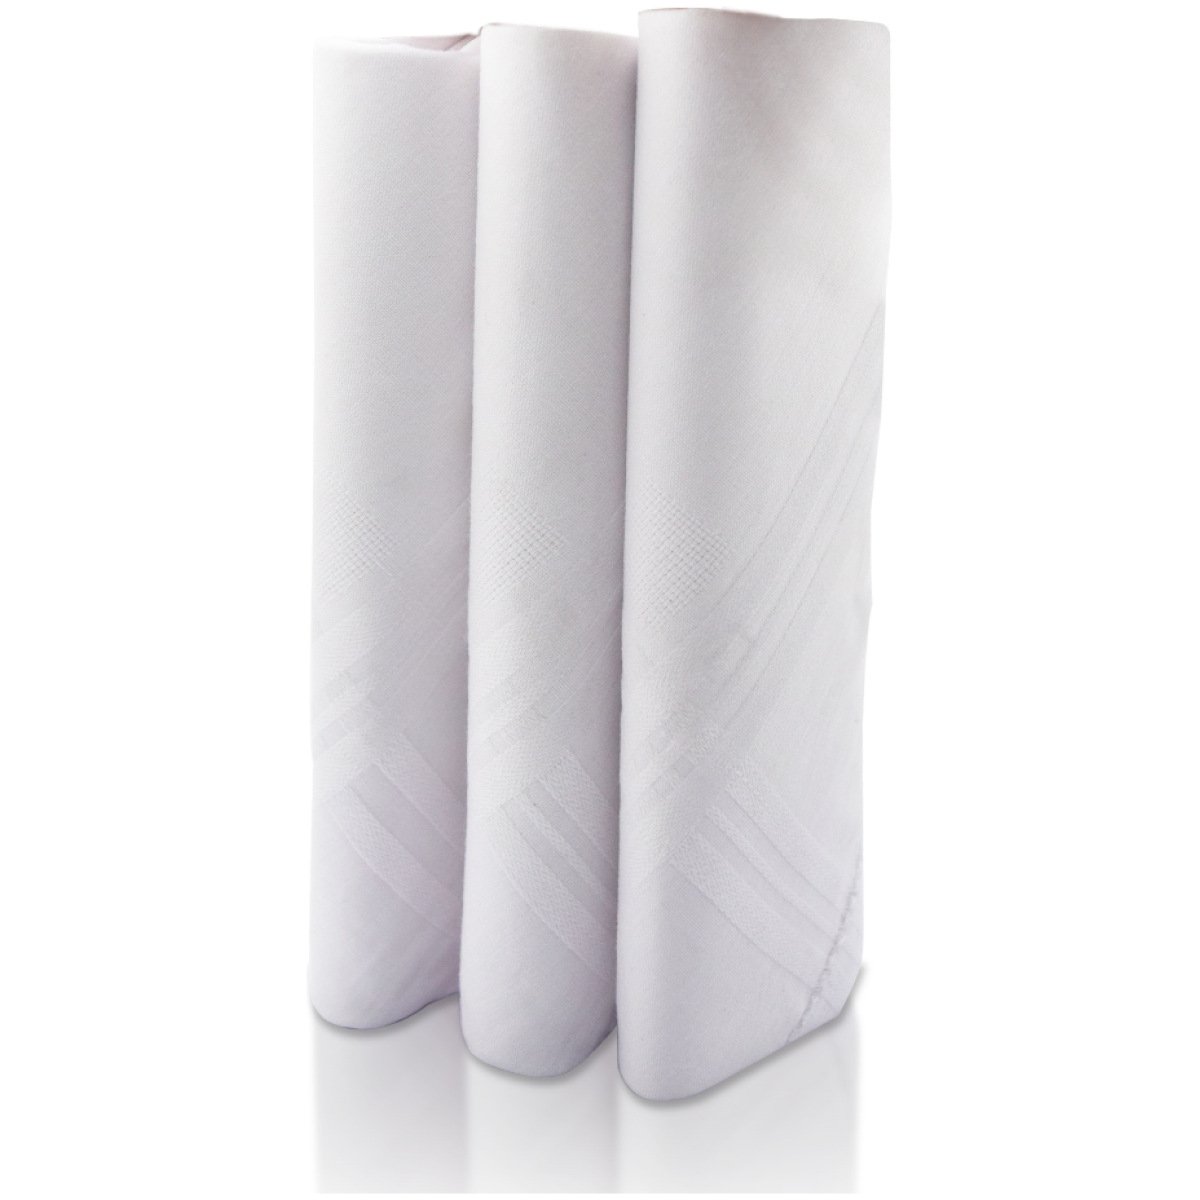 SHELTER Premium HandKerchiefs |100% Cotton Hankies White Color | Size 40 x 40 CM Pack of 3